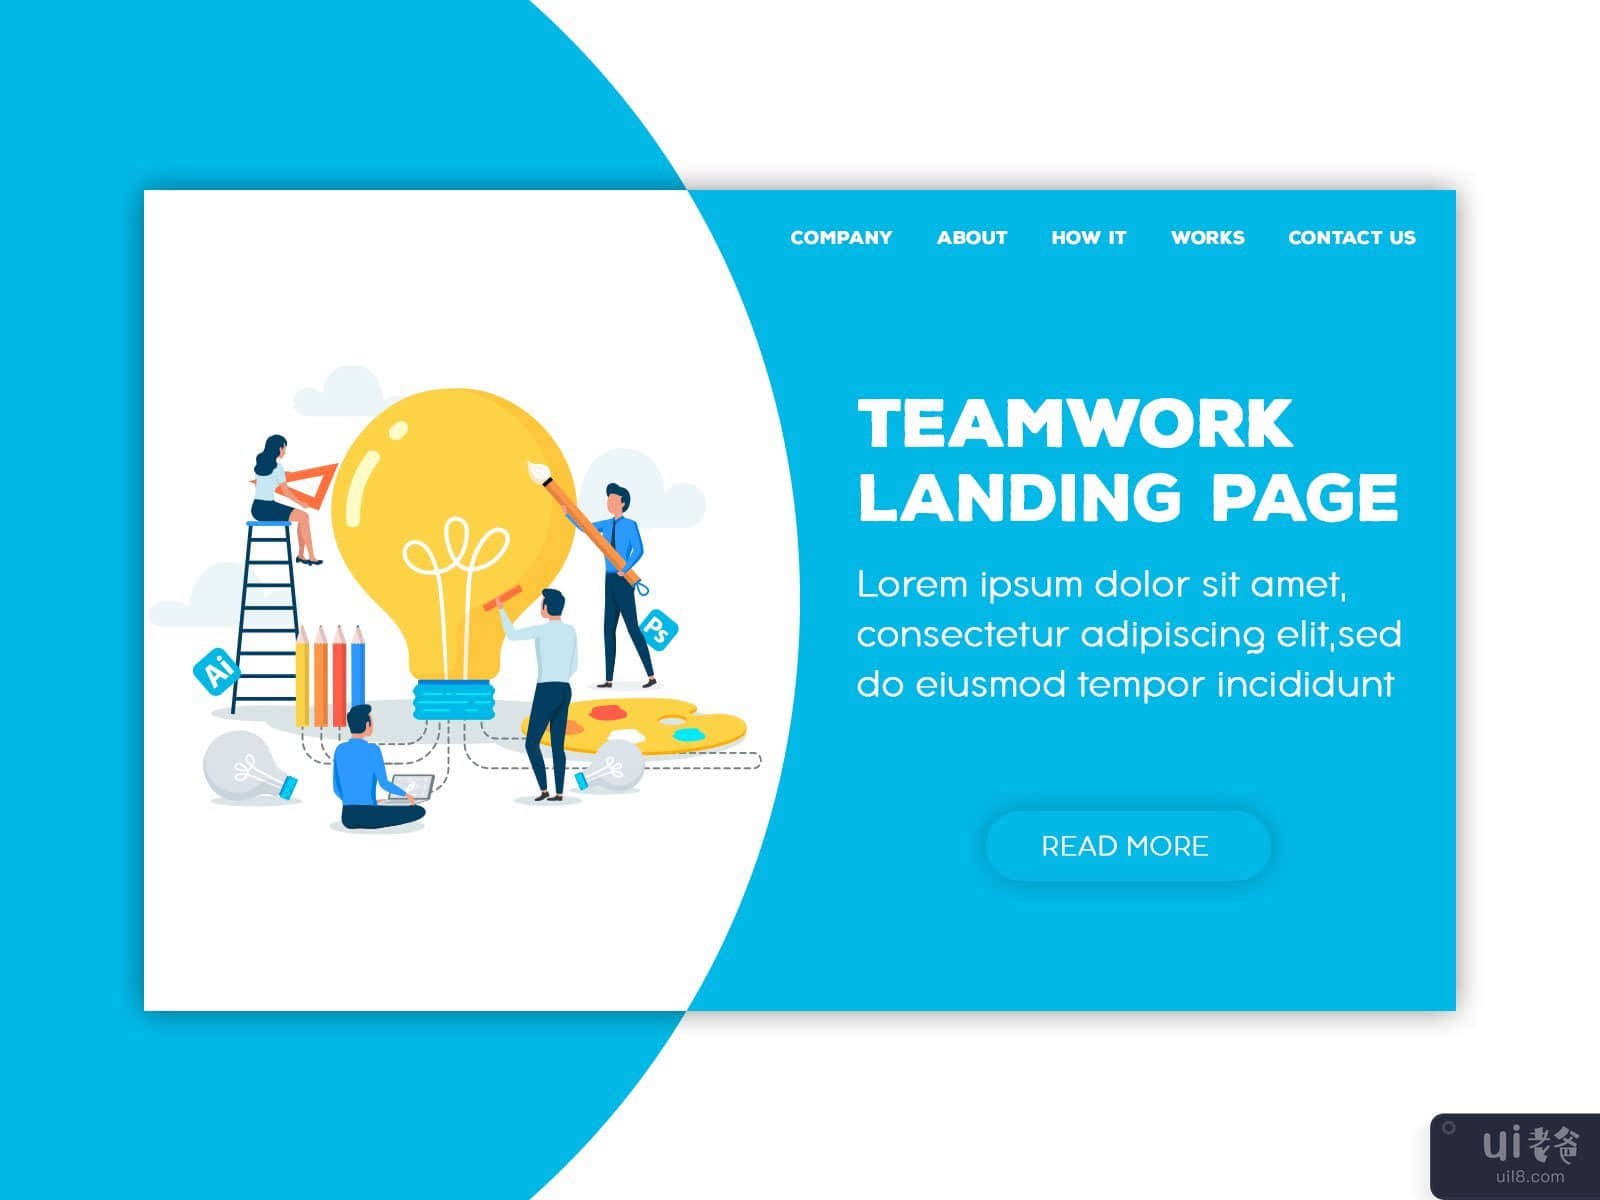 团队合作登陆页面(Teamwork Landing Page)插图